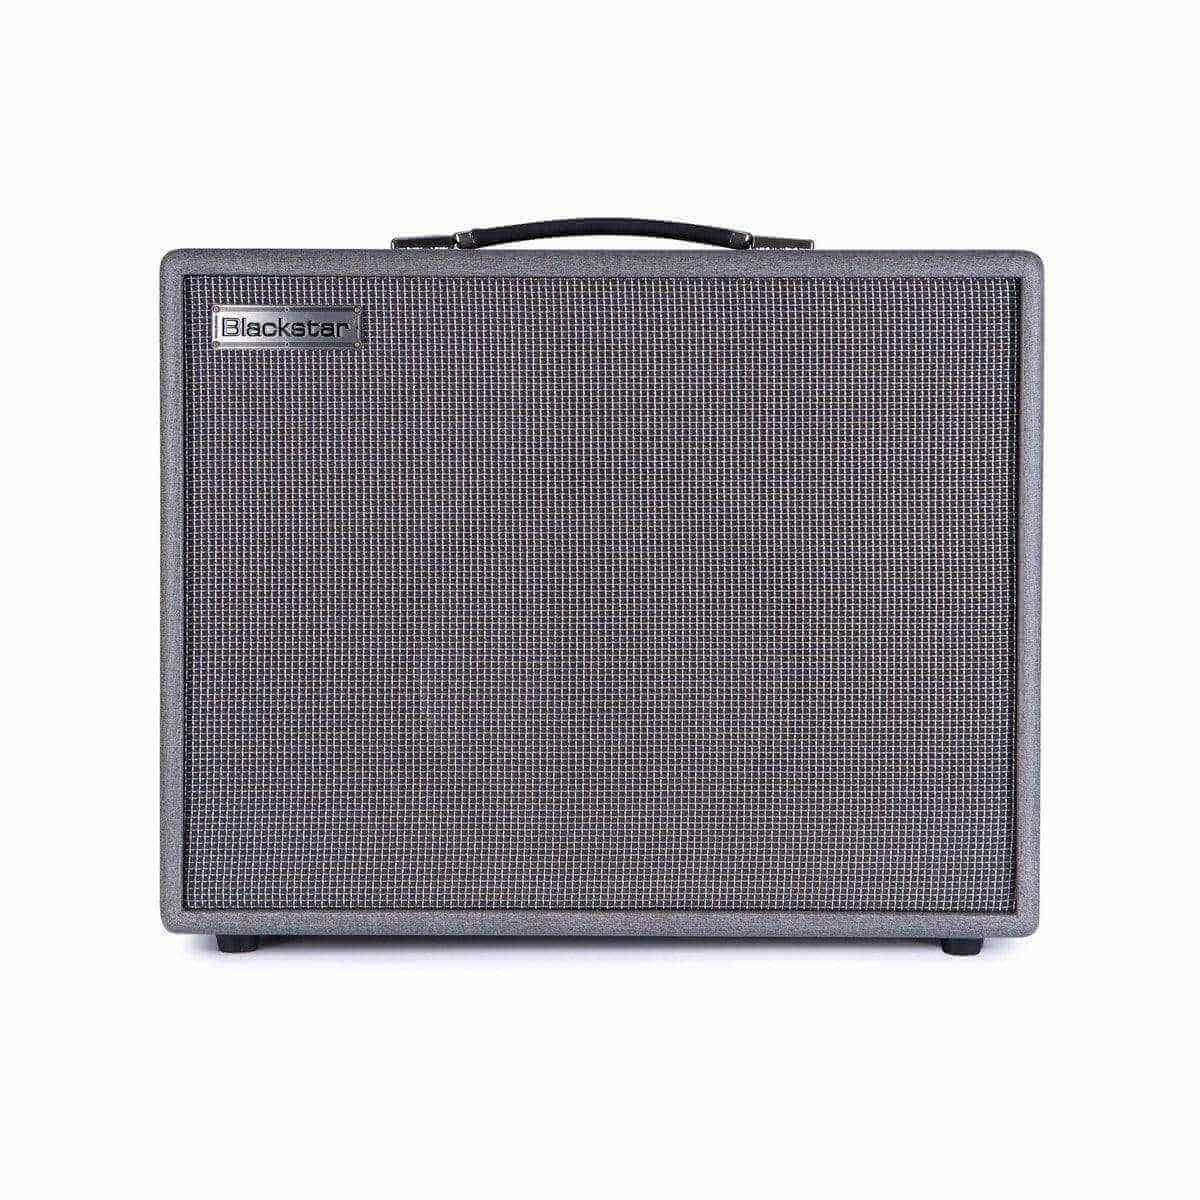 Blackstar Amplifier Blackstar Silverline Deluxe 100w 1x12 Combo